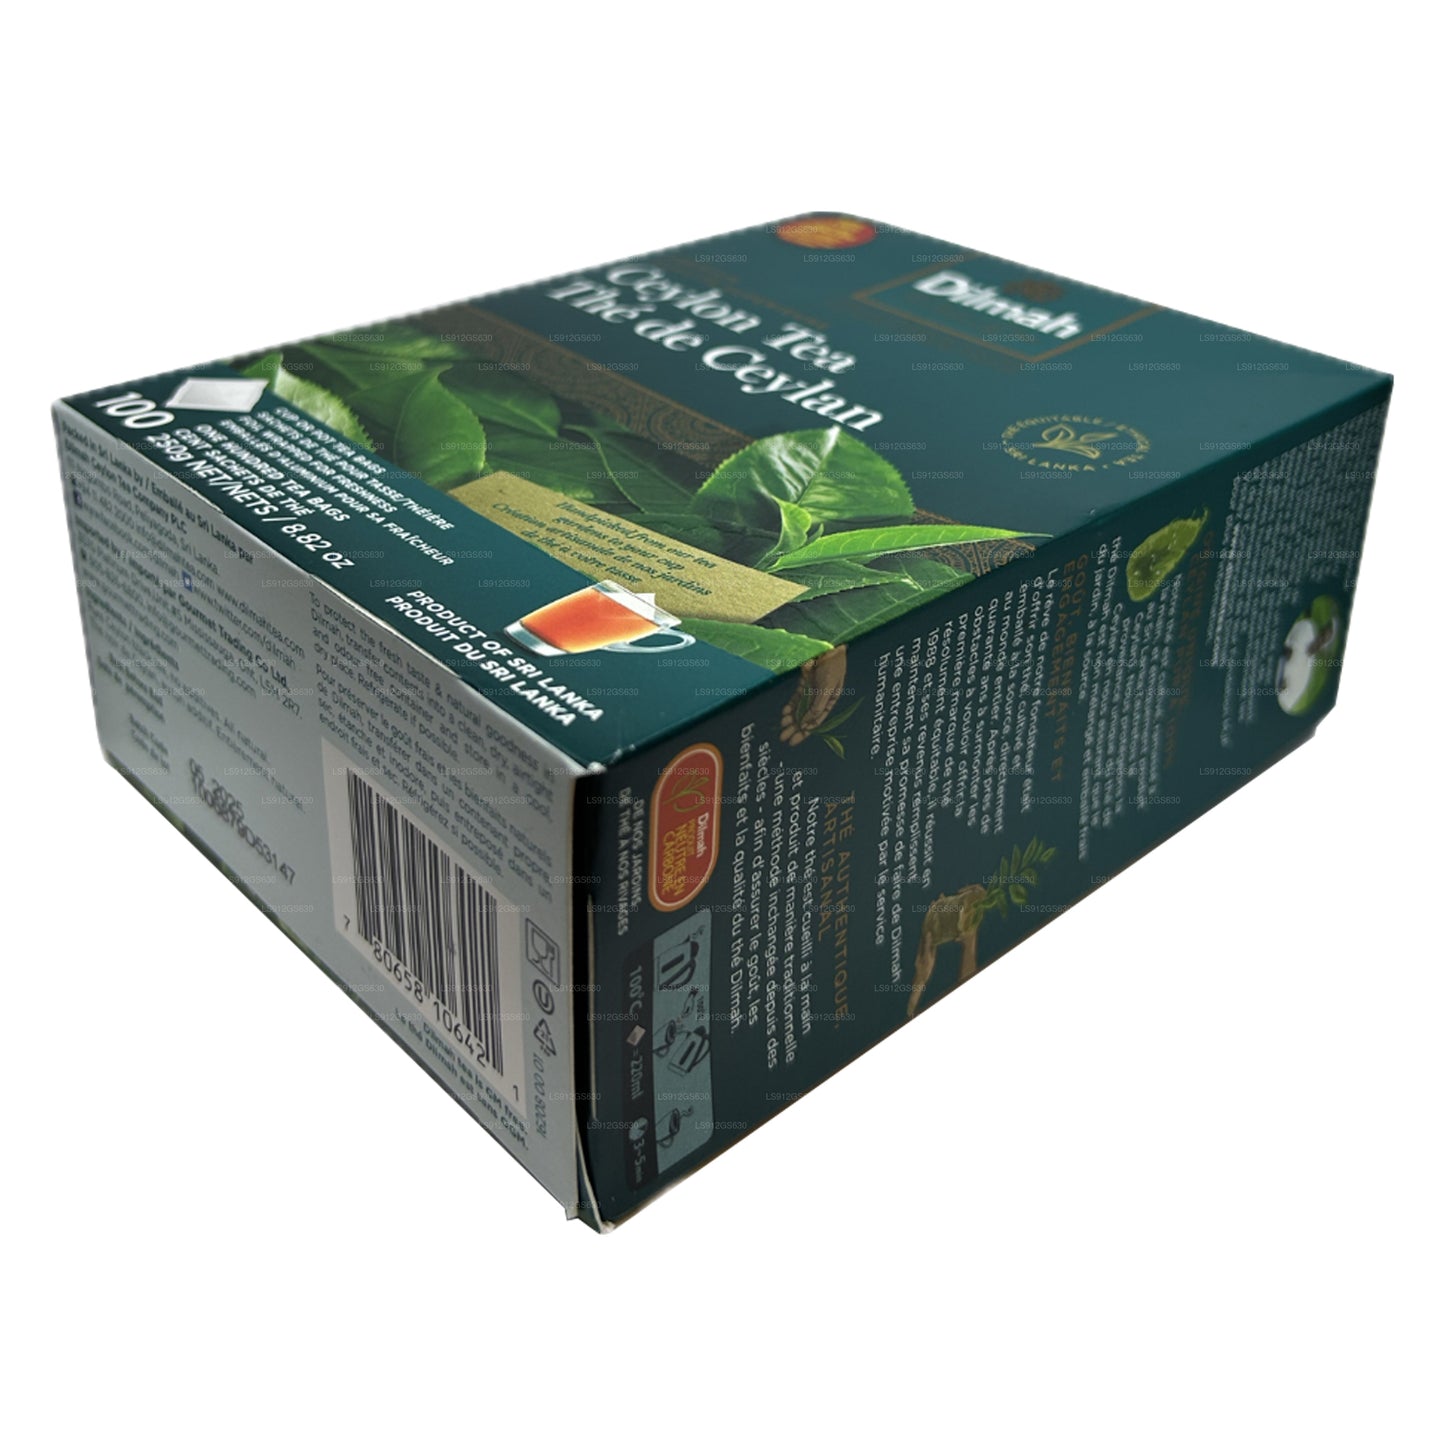 Thé de Ceylan Dilmah Premium (250 g) 100 sachets de thé sans étiquette